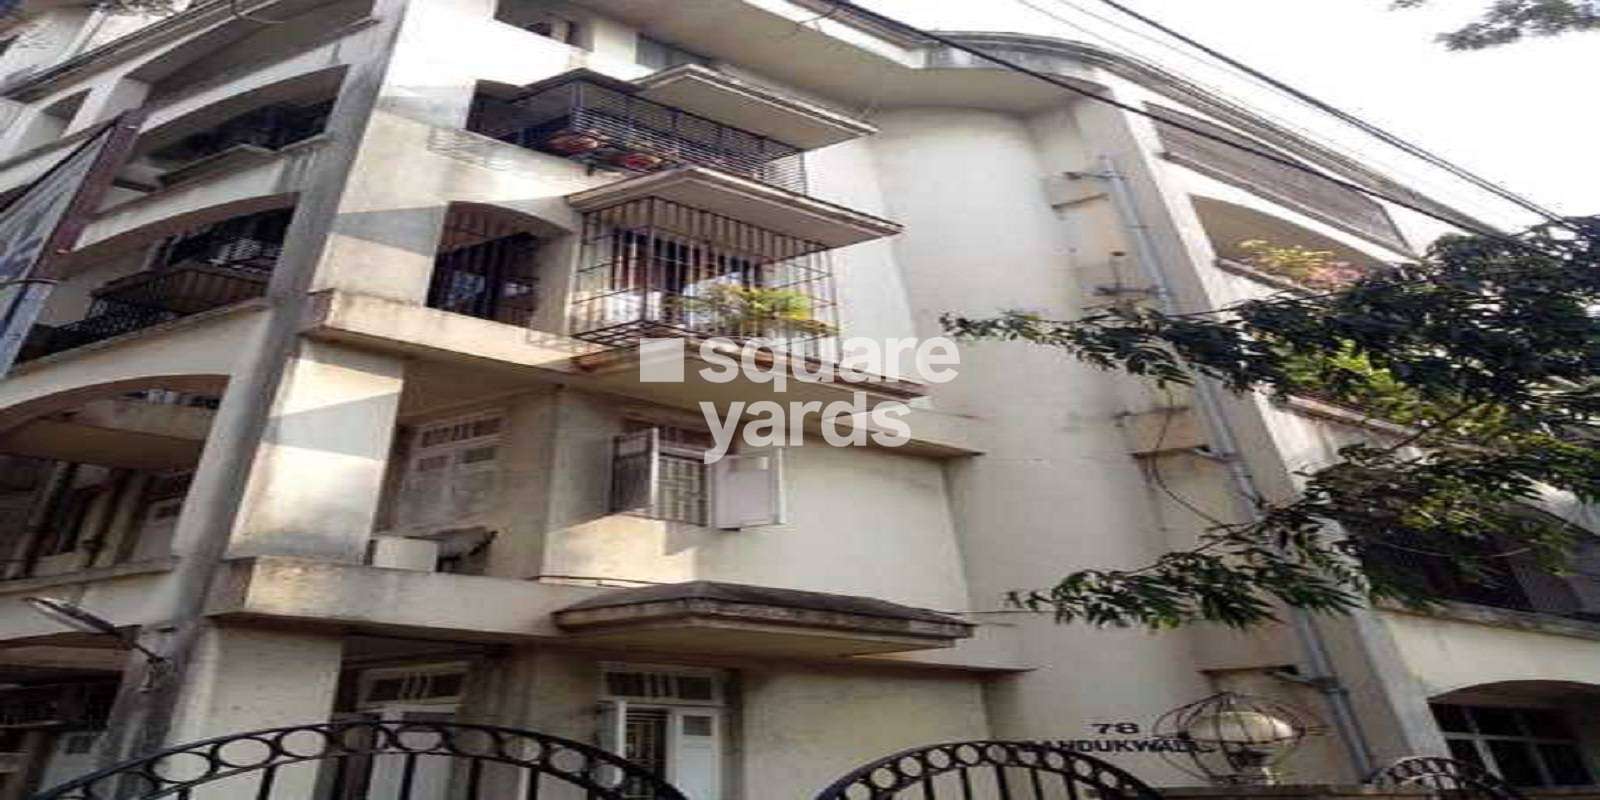 Bandukwalas Apartment Cover Image